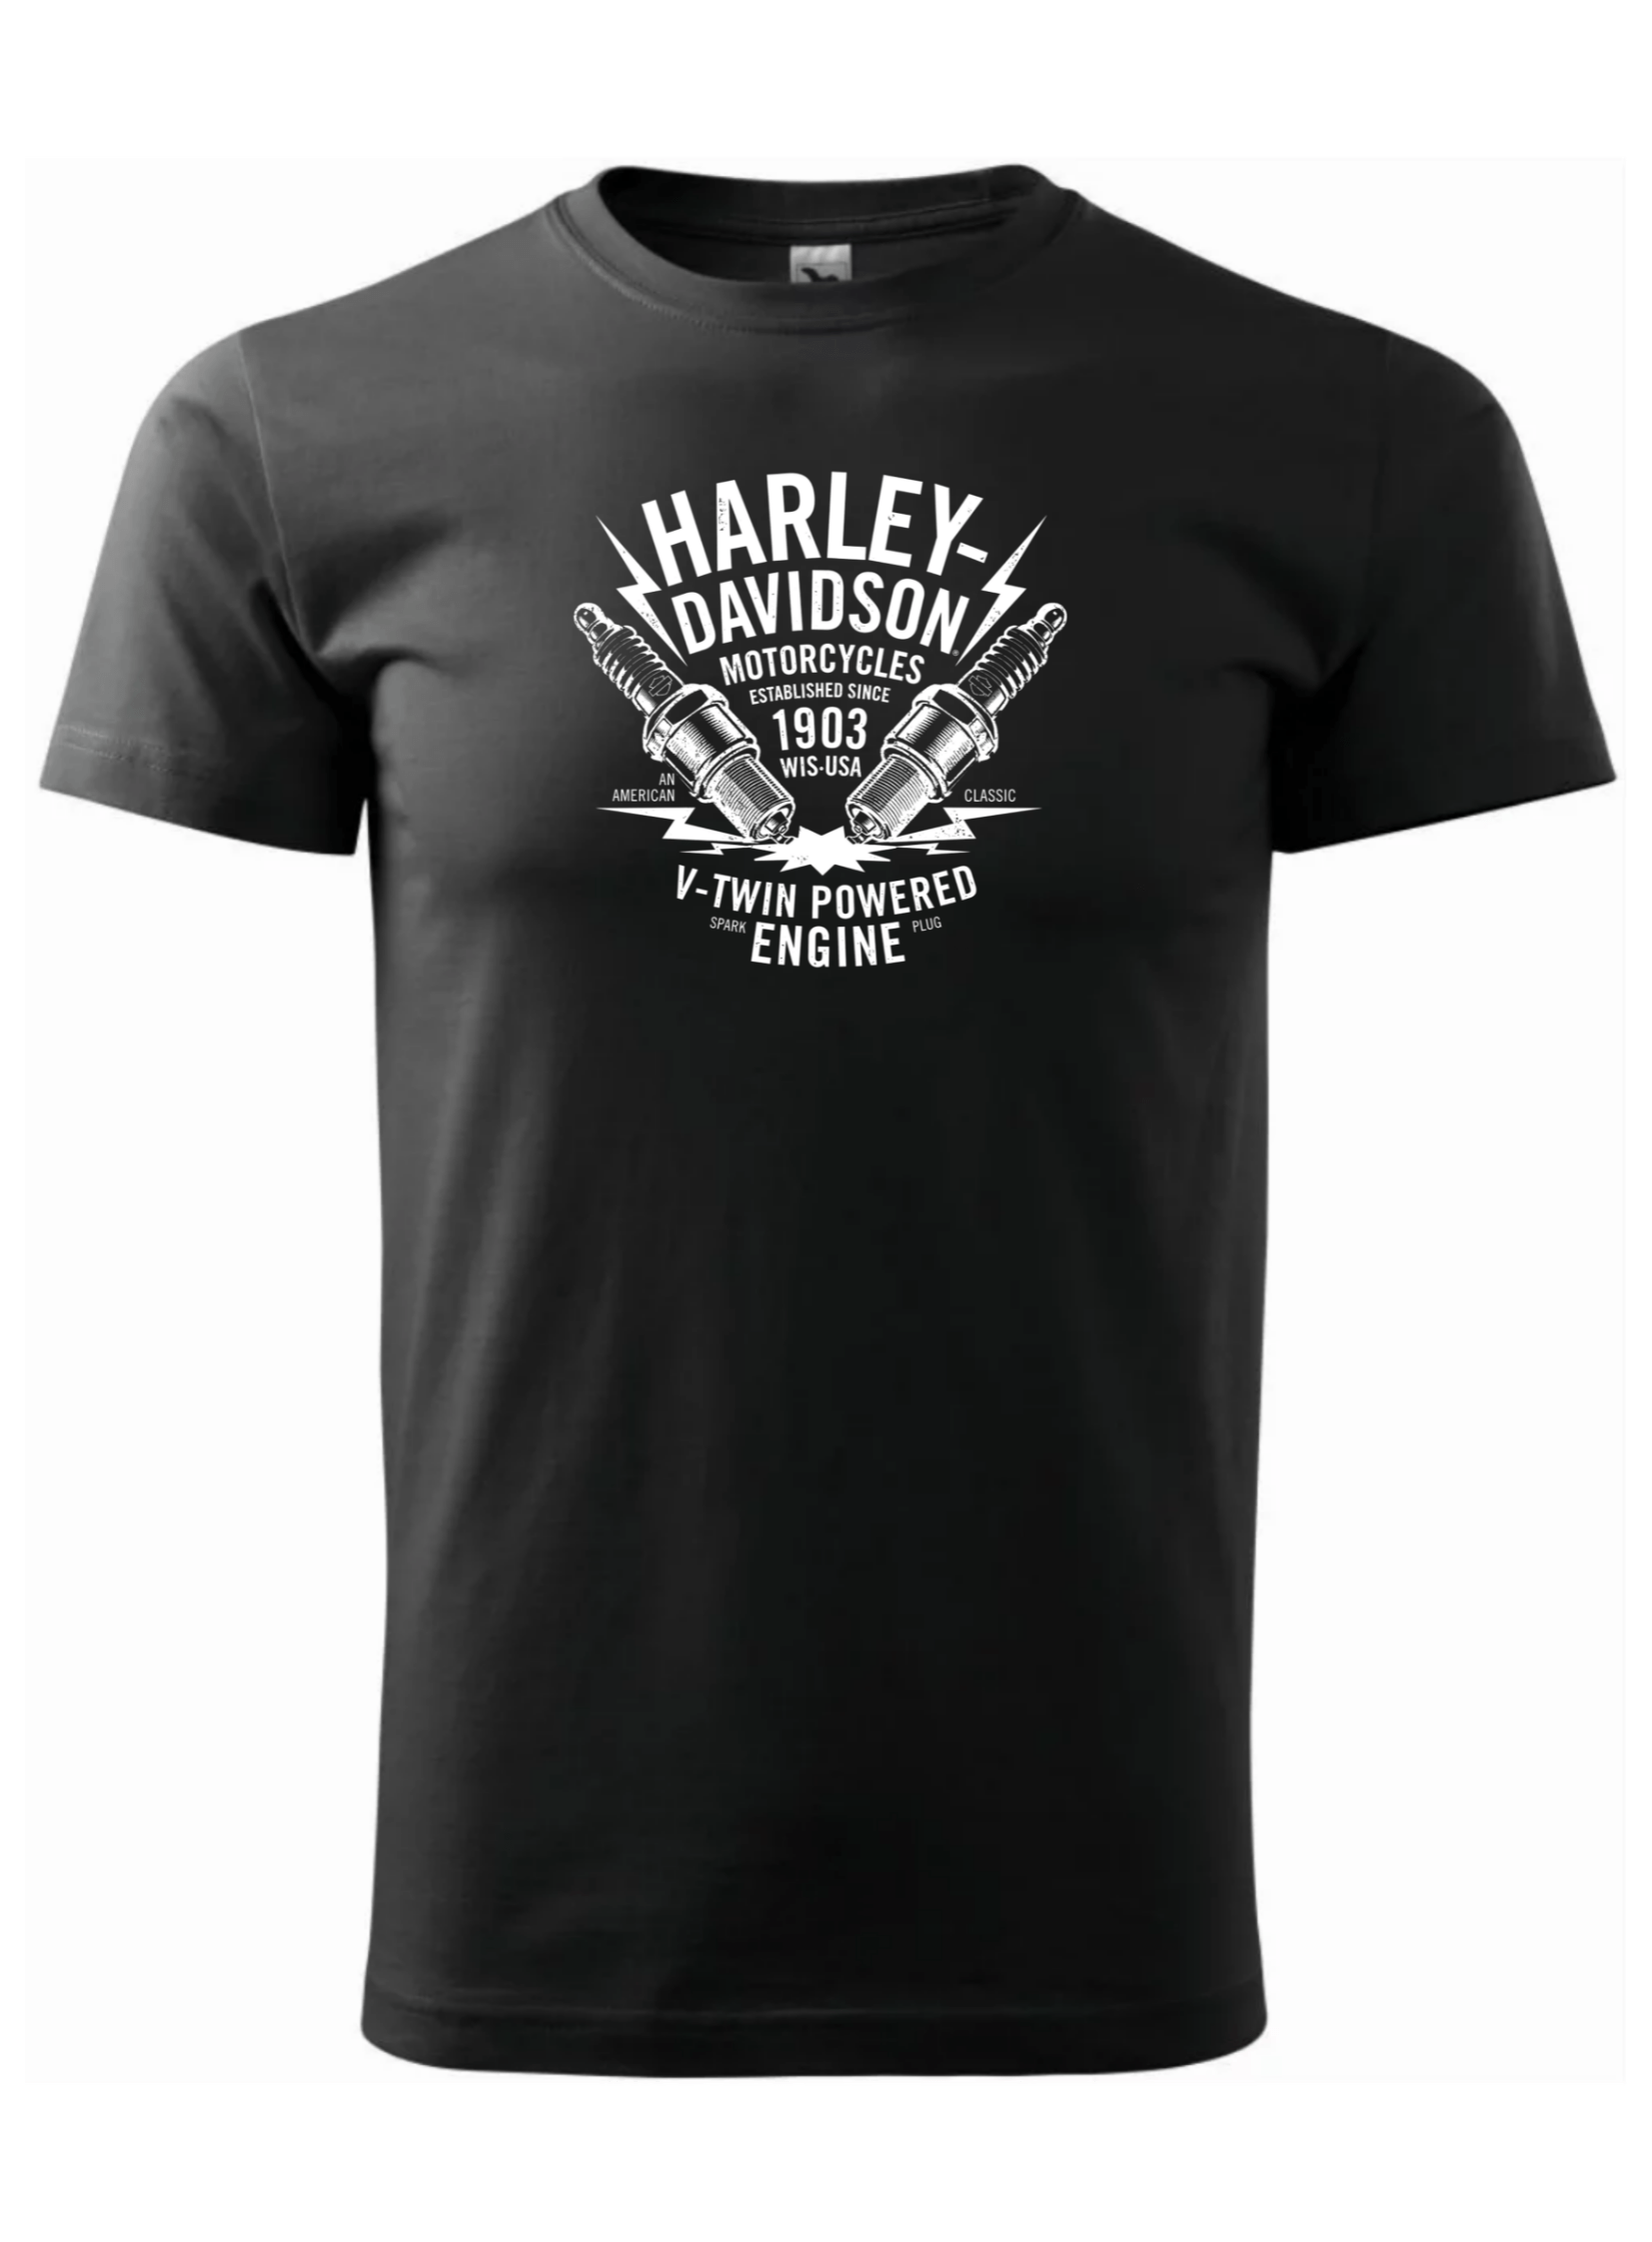 Pánské tričko s potiskem značky Harley Davidson 21